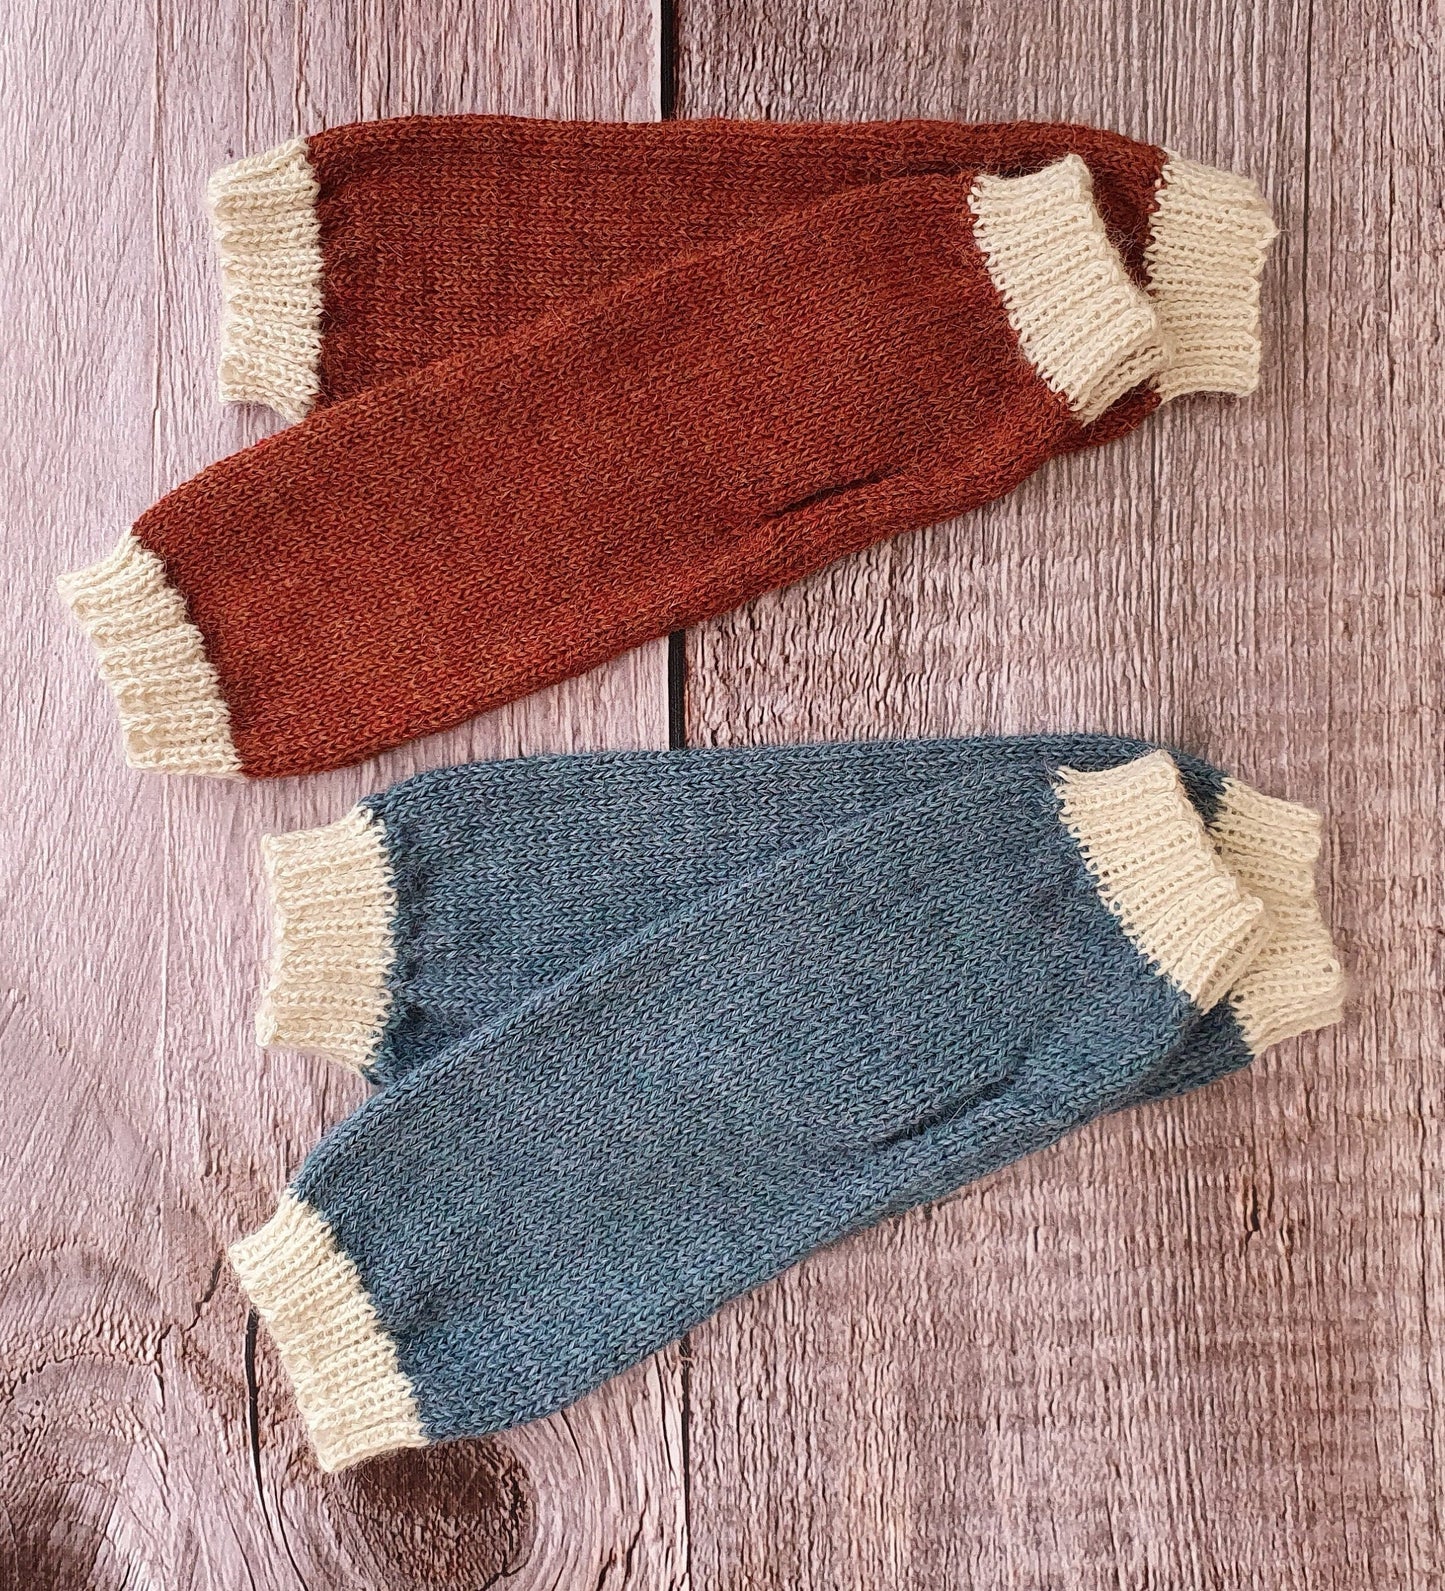 100% Alpaca Fingerless Mittens, Gloves, Wristwarmers, warm wool knit, Fair trade, ethical gift, eco friendly natural fibre, winter woollen